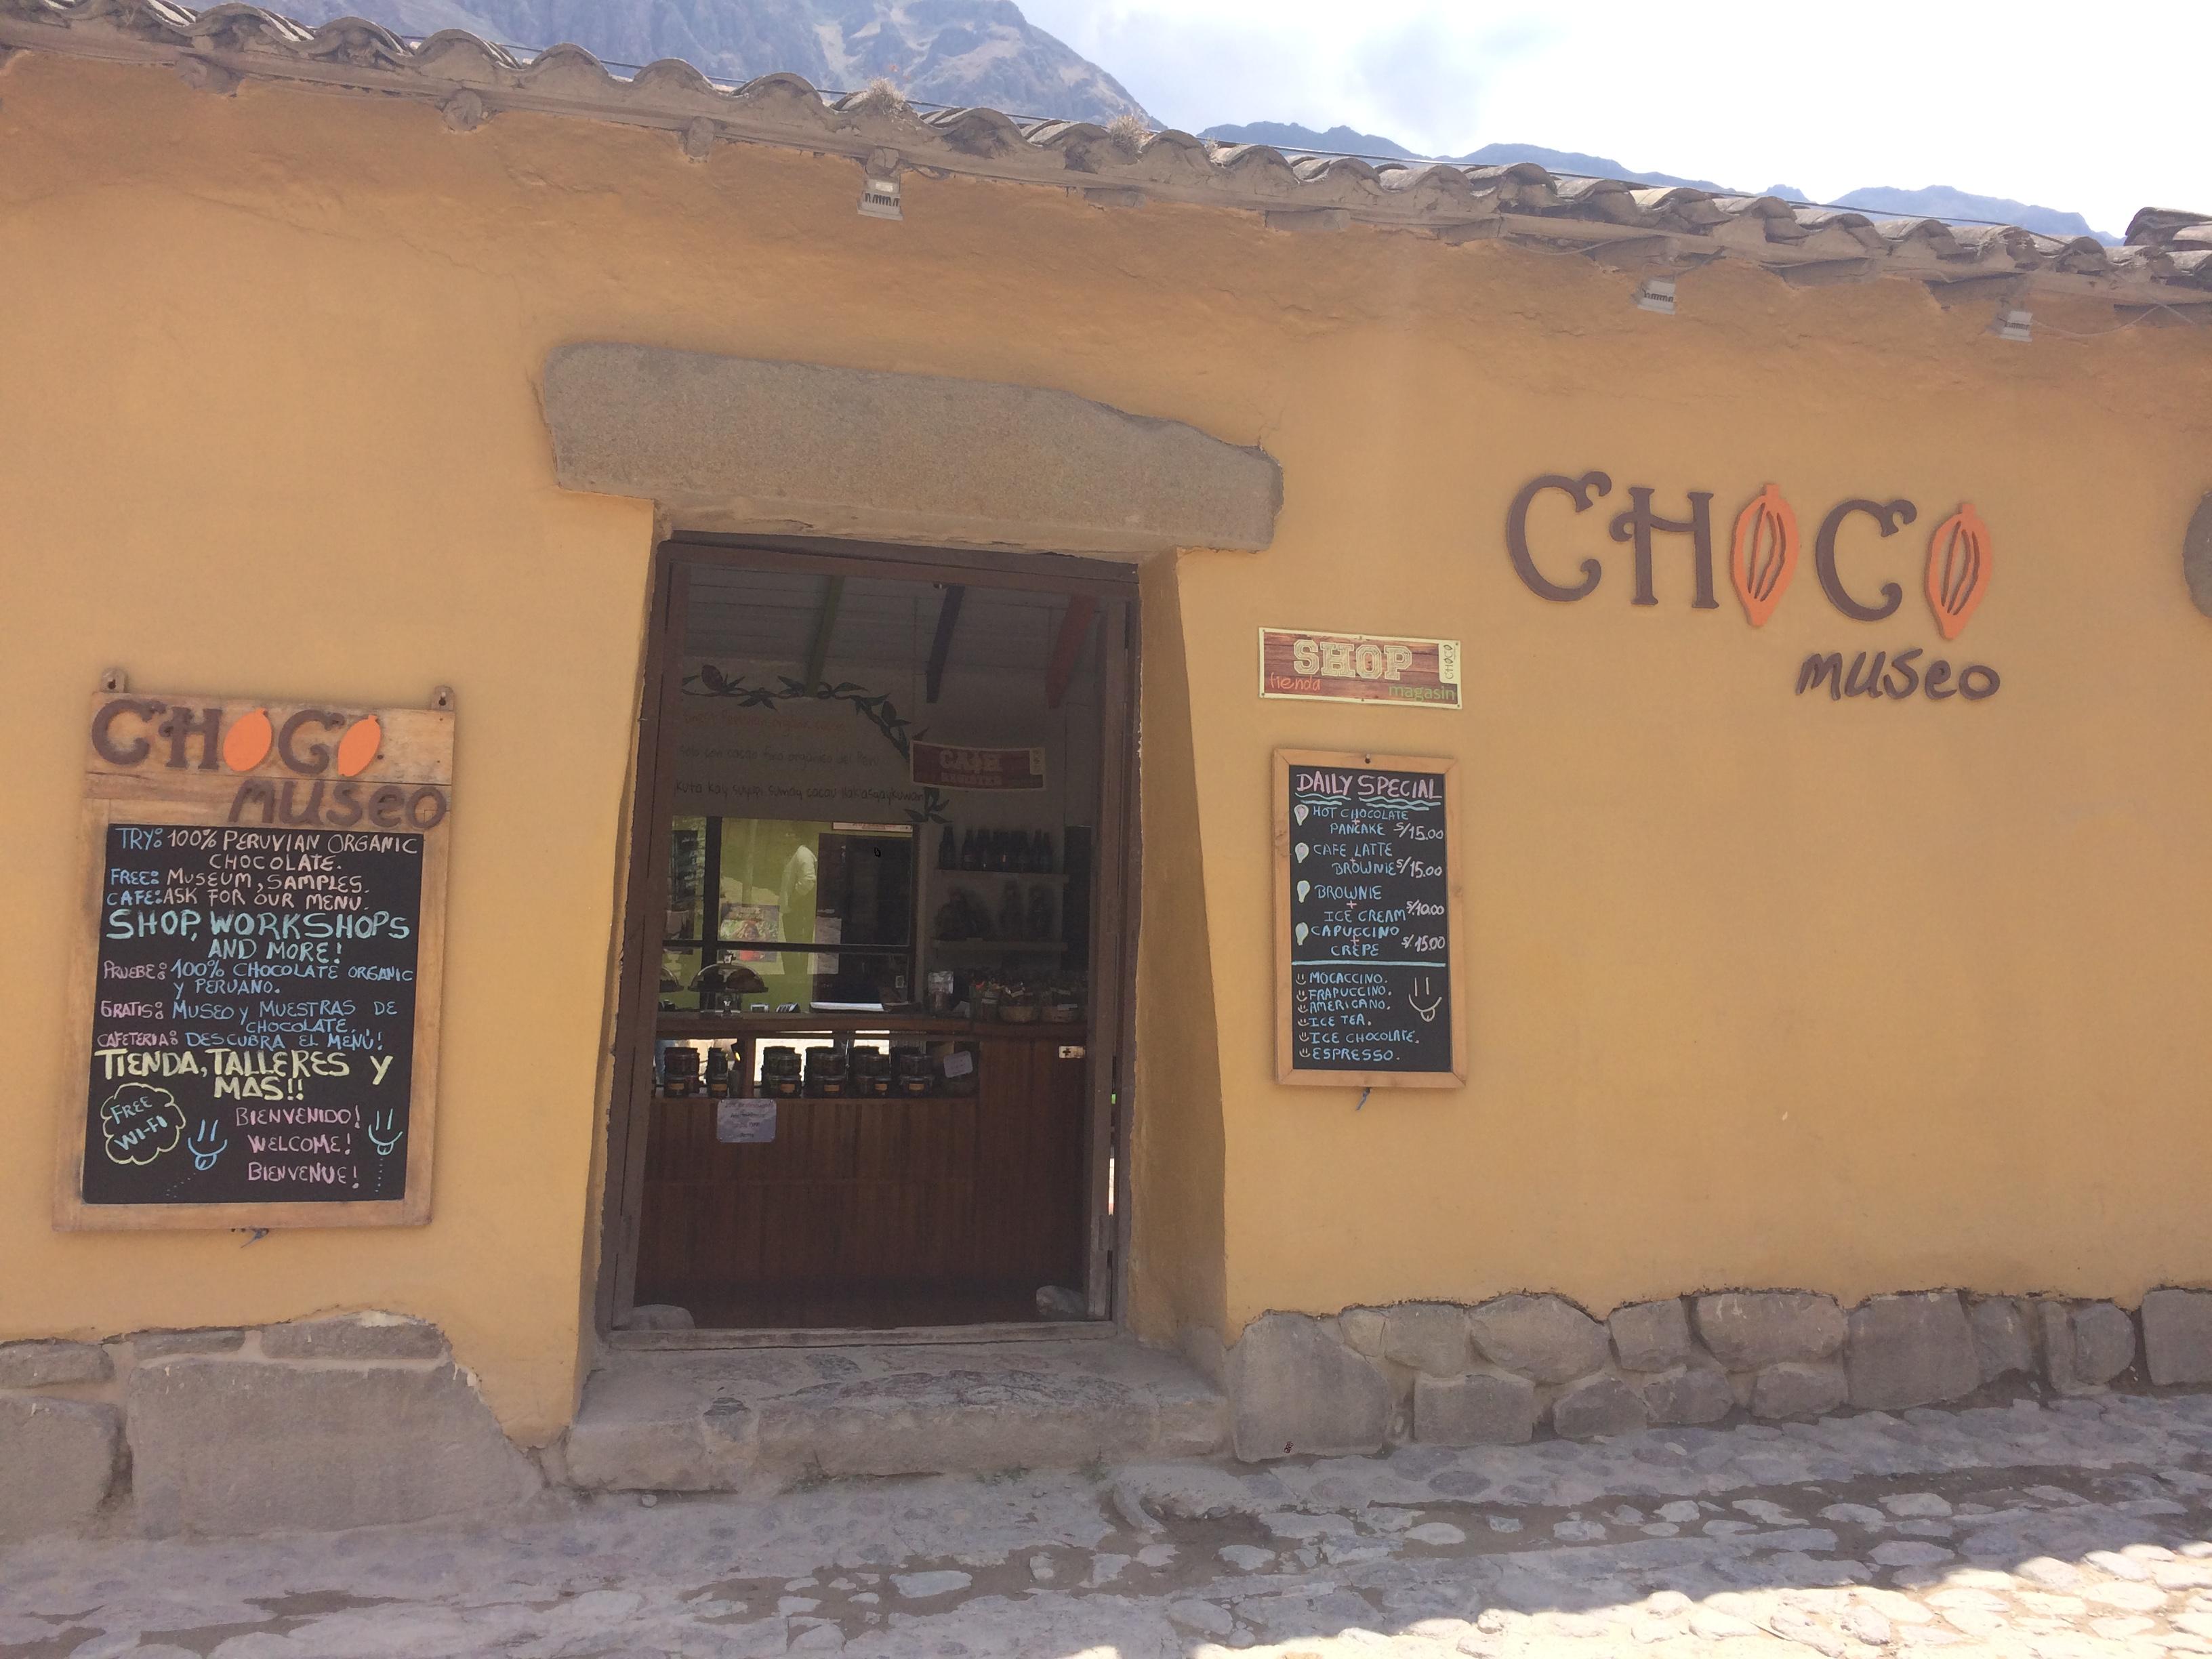 Muzeum čokolády v Ollantaytambo, Peru. / / / Nejkomplexnější průvodce tam Ollantaytambo, Peru, malé město na cestě do Machu Picchu, že jsem měl to potěšení žít na několik měsíců! / # Ollantaytambo #machu Picchu # sacred # valley #valle #sagrado # Travel #Cusco #Cuzco # guide # itinerář #What #to # do # eat #chocolate # museum